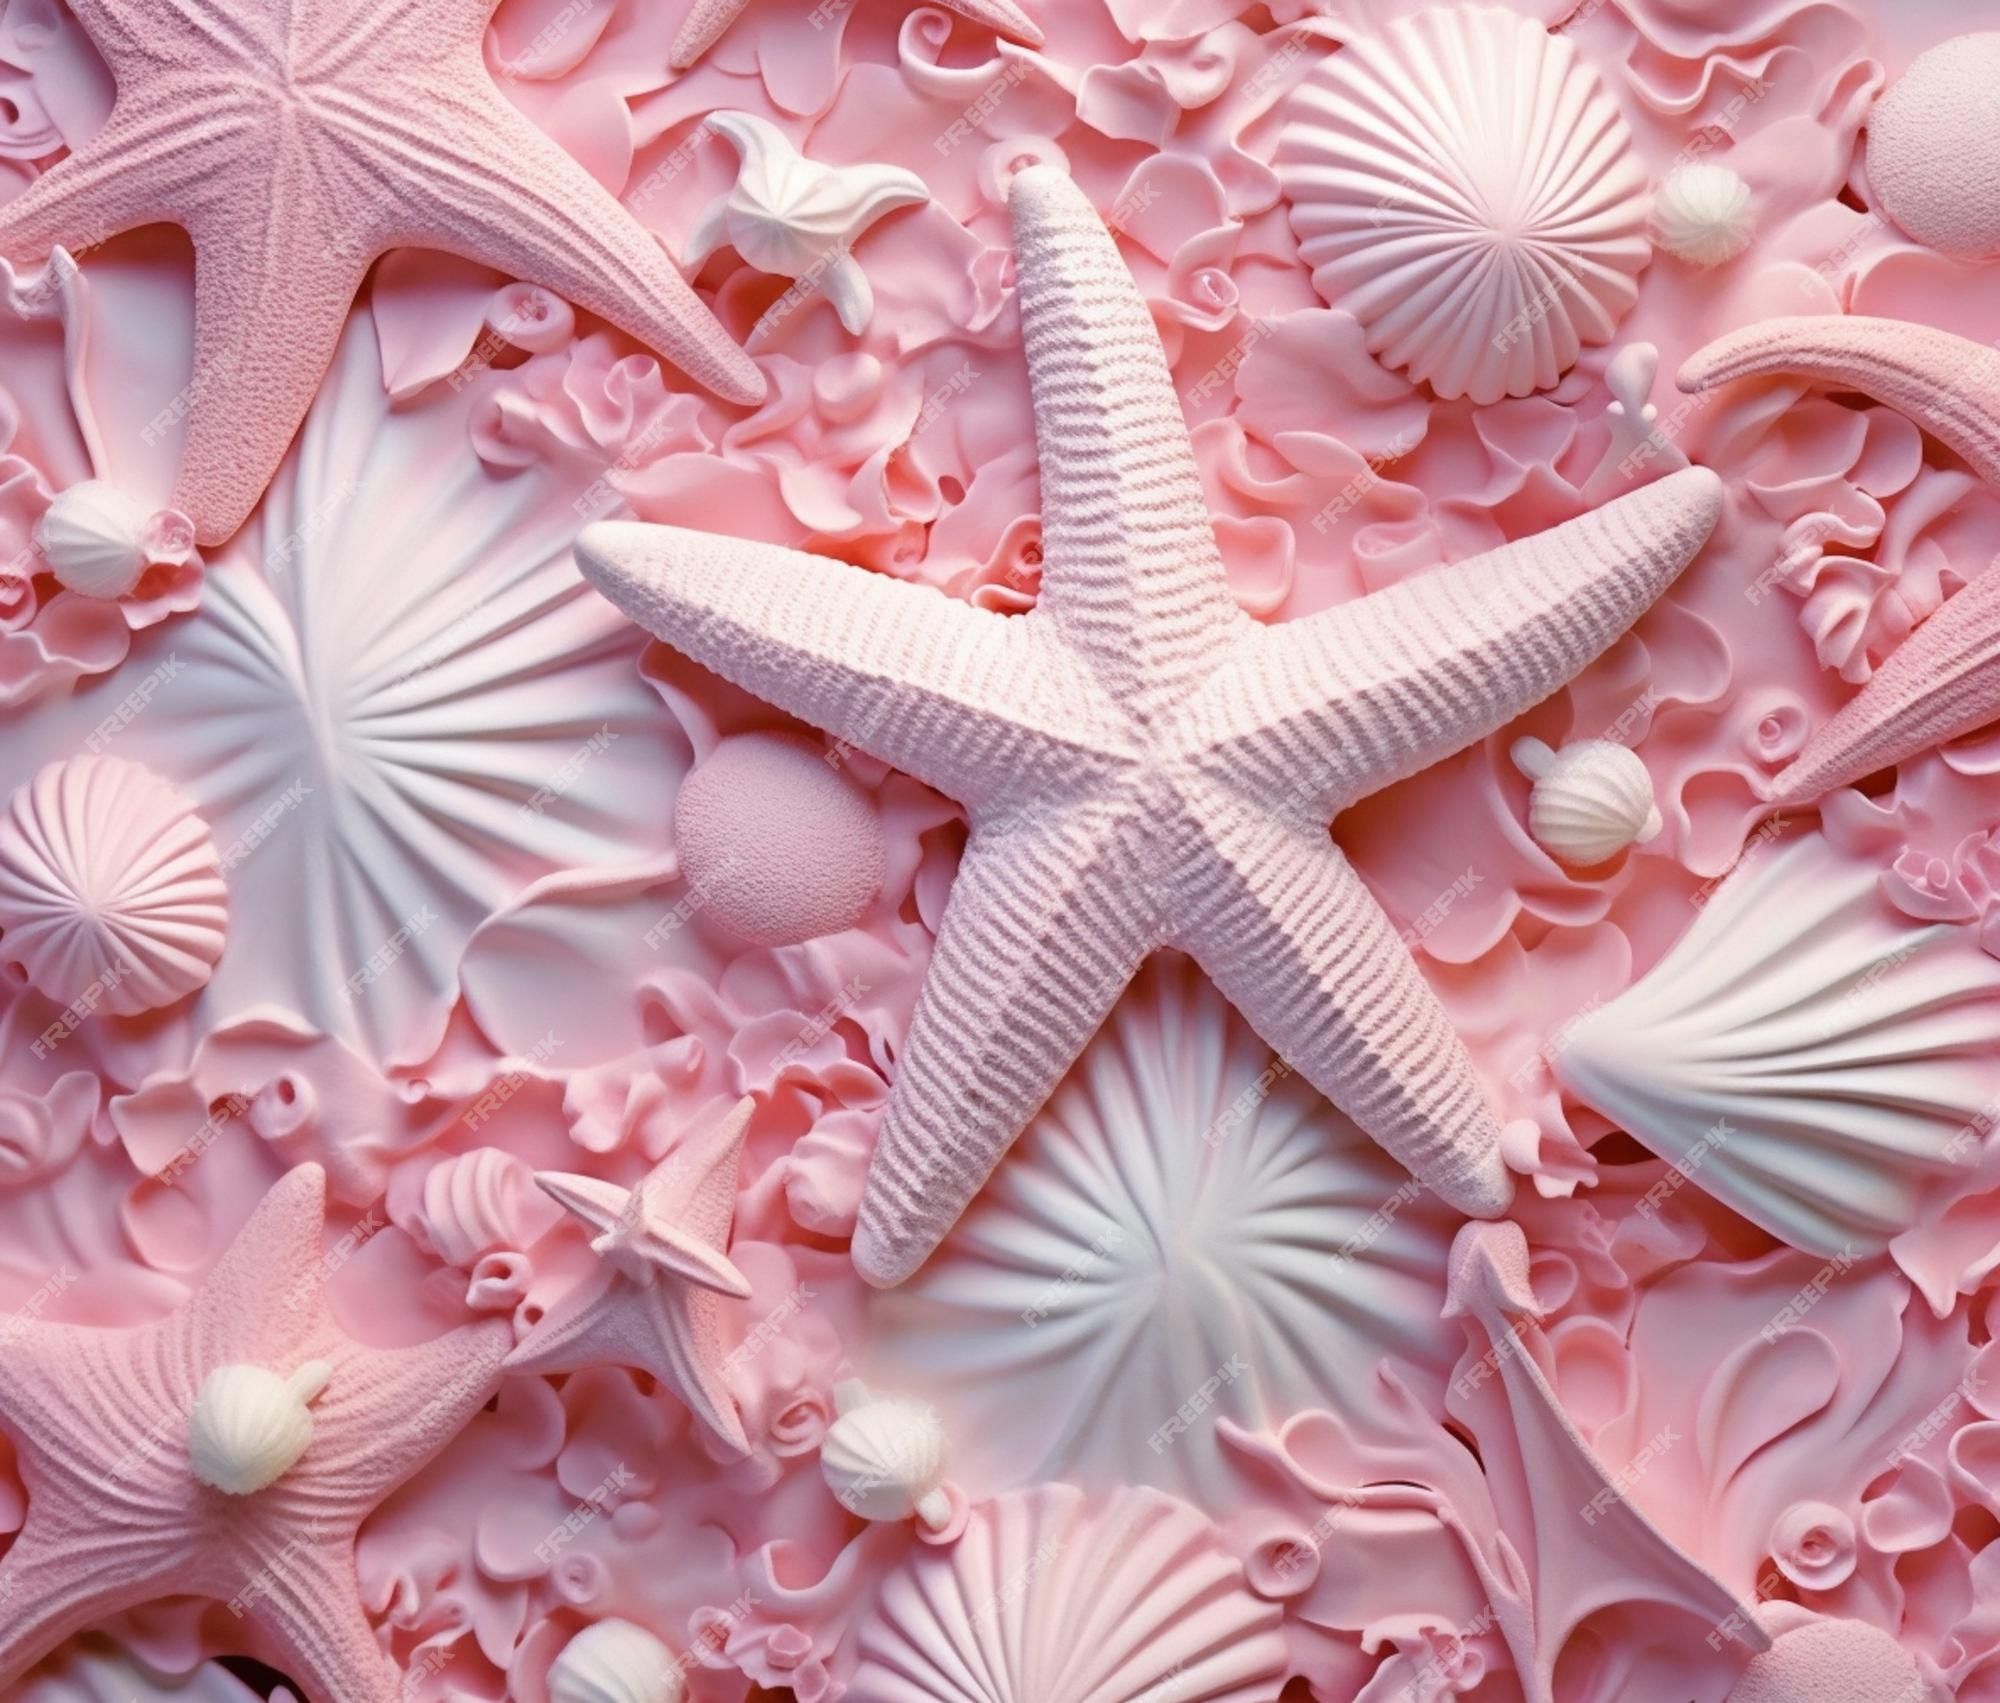 Starfish Underwater Image